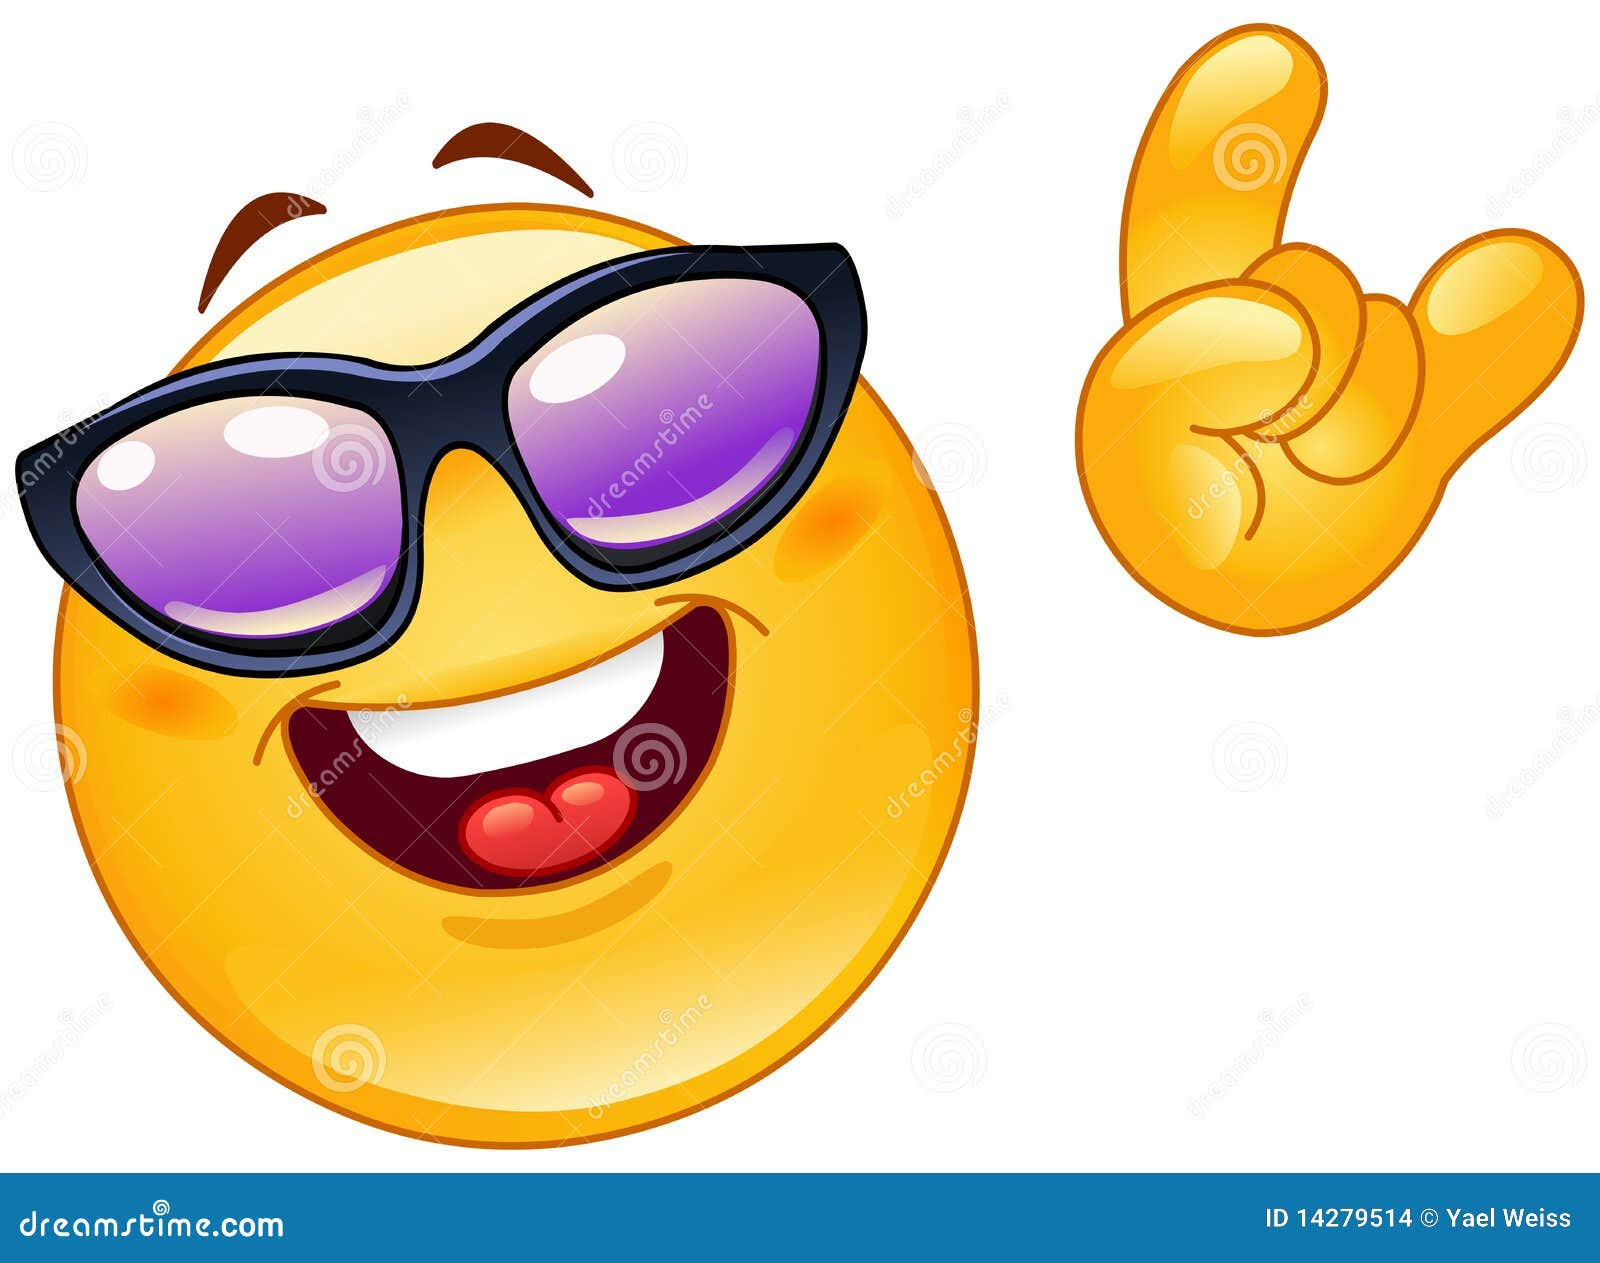 Download 9000 Koleksi Gambar Emoji Ketawa Terbaik HD